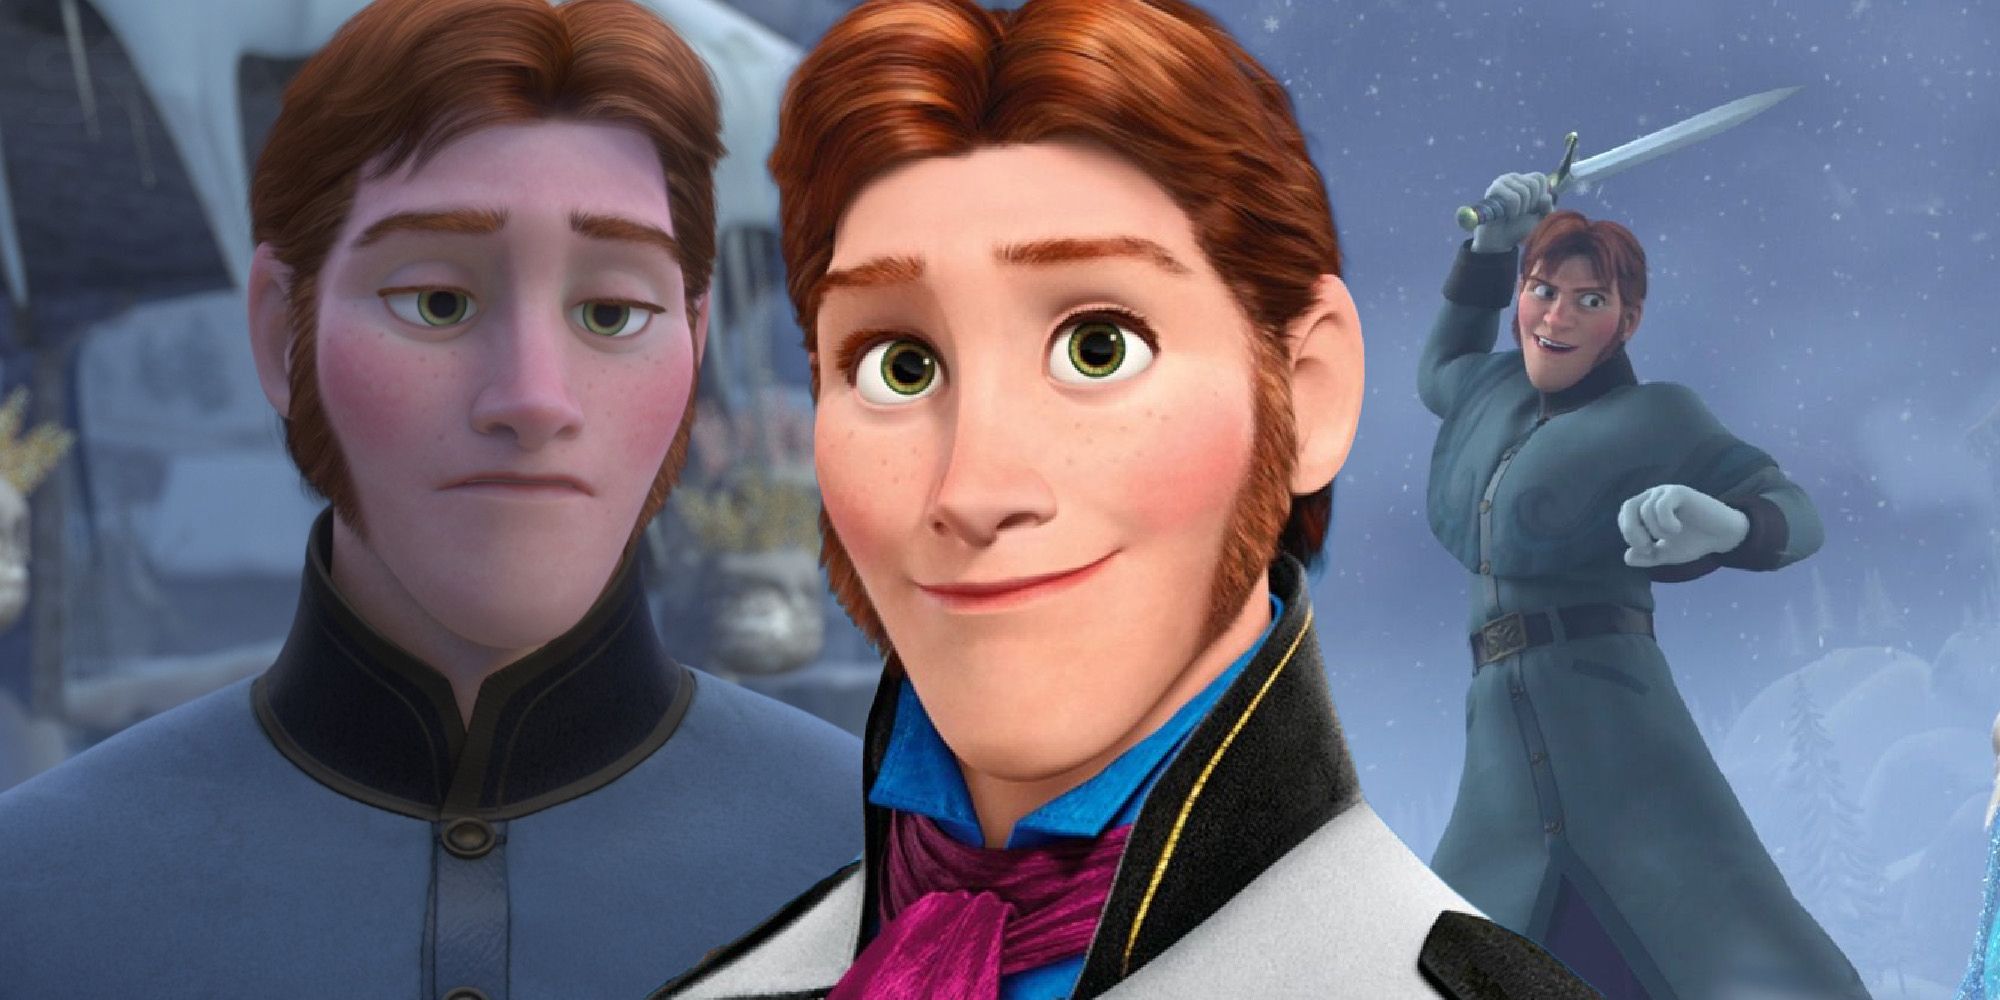 Prince Hans Frozen 2.